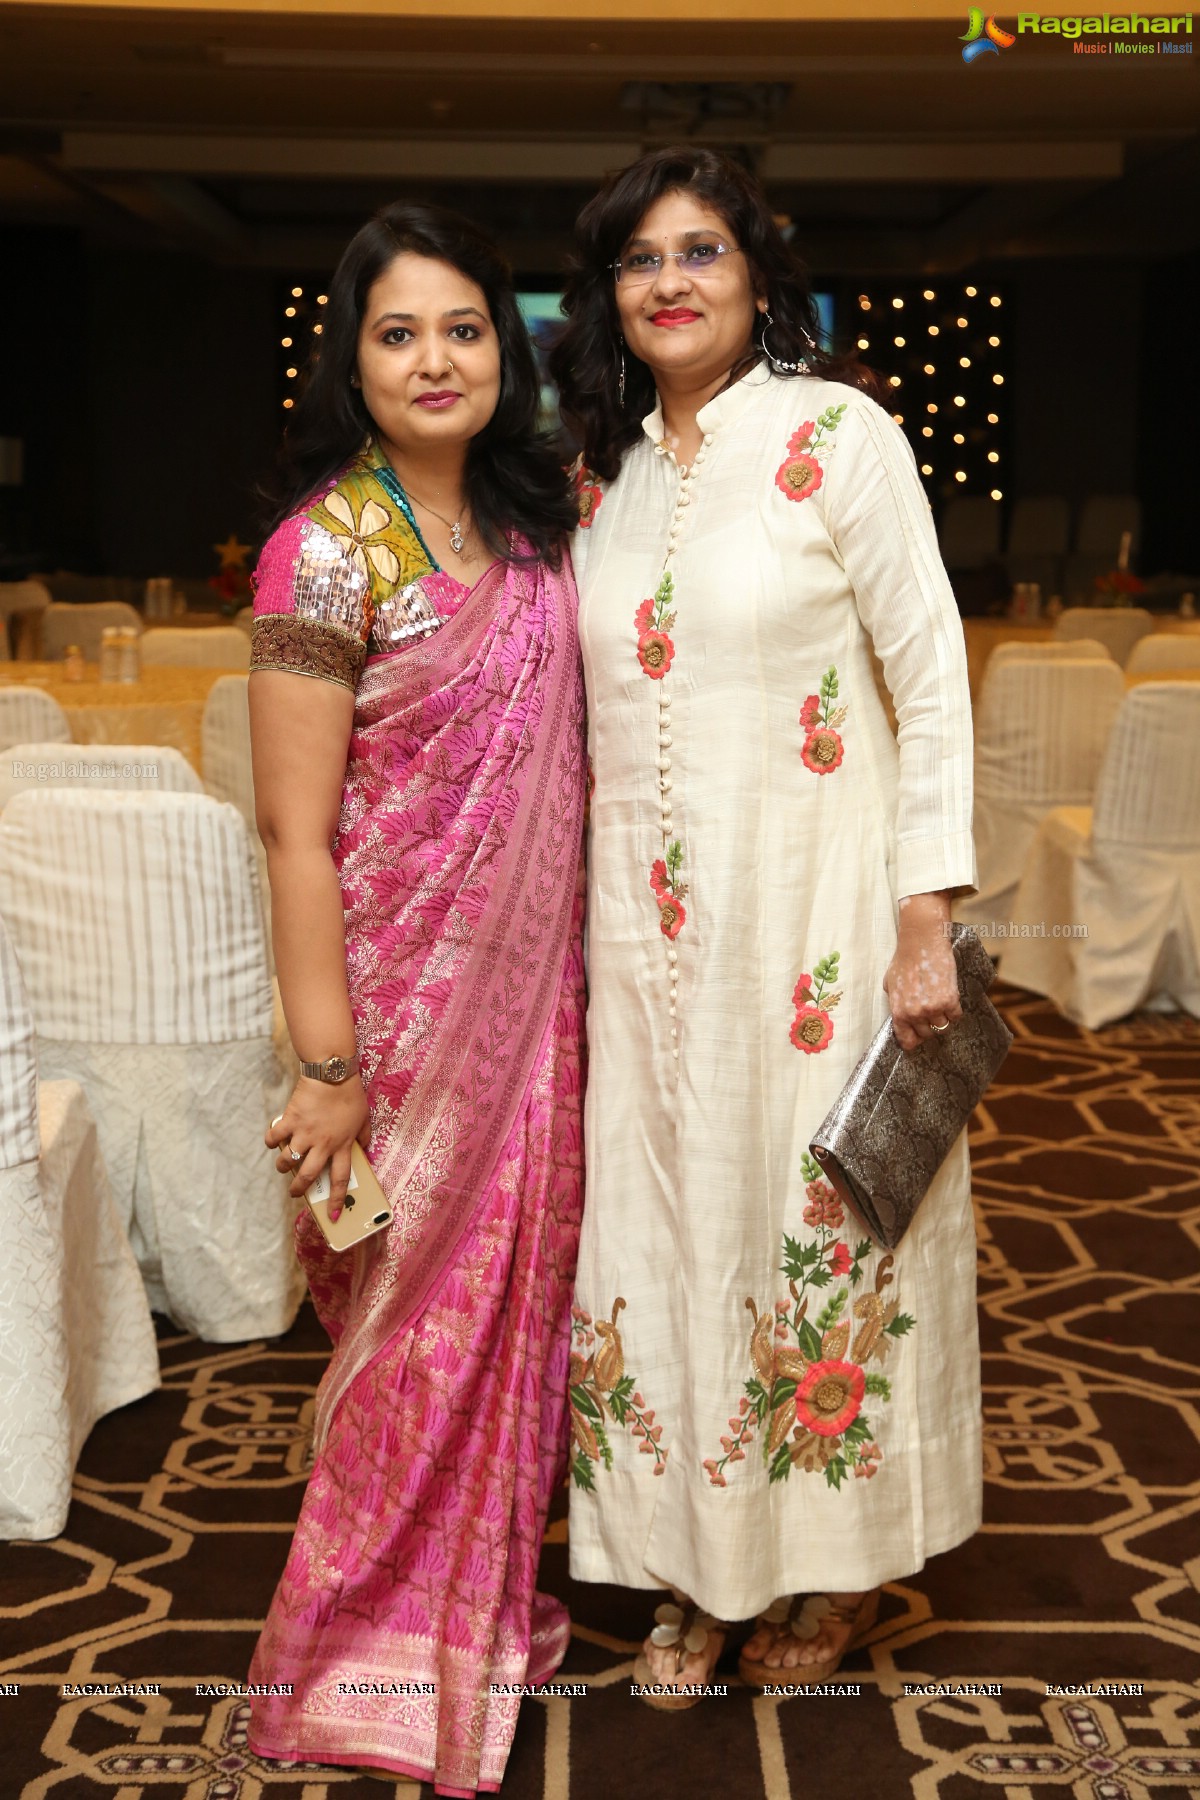 The Samanvay 2017 Awards at Park Hyatt, Hyderabad